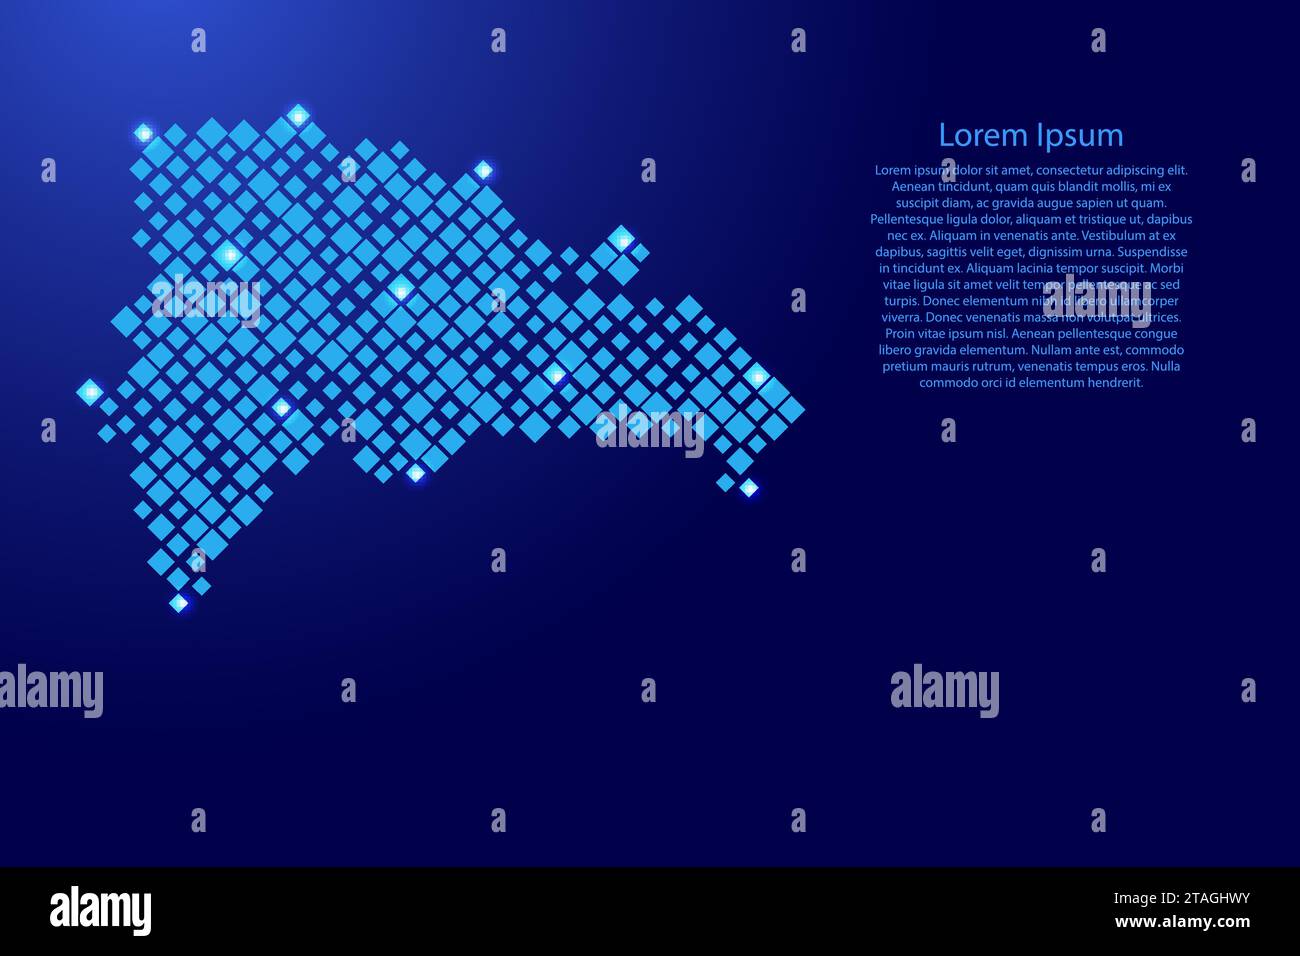 Dominikanische Republik aus blauen Rauten unterschiedlicher Größe und leuchtendem Sternenraster. Vektorabbildung. Stock Vektor